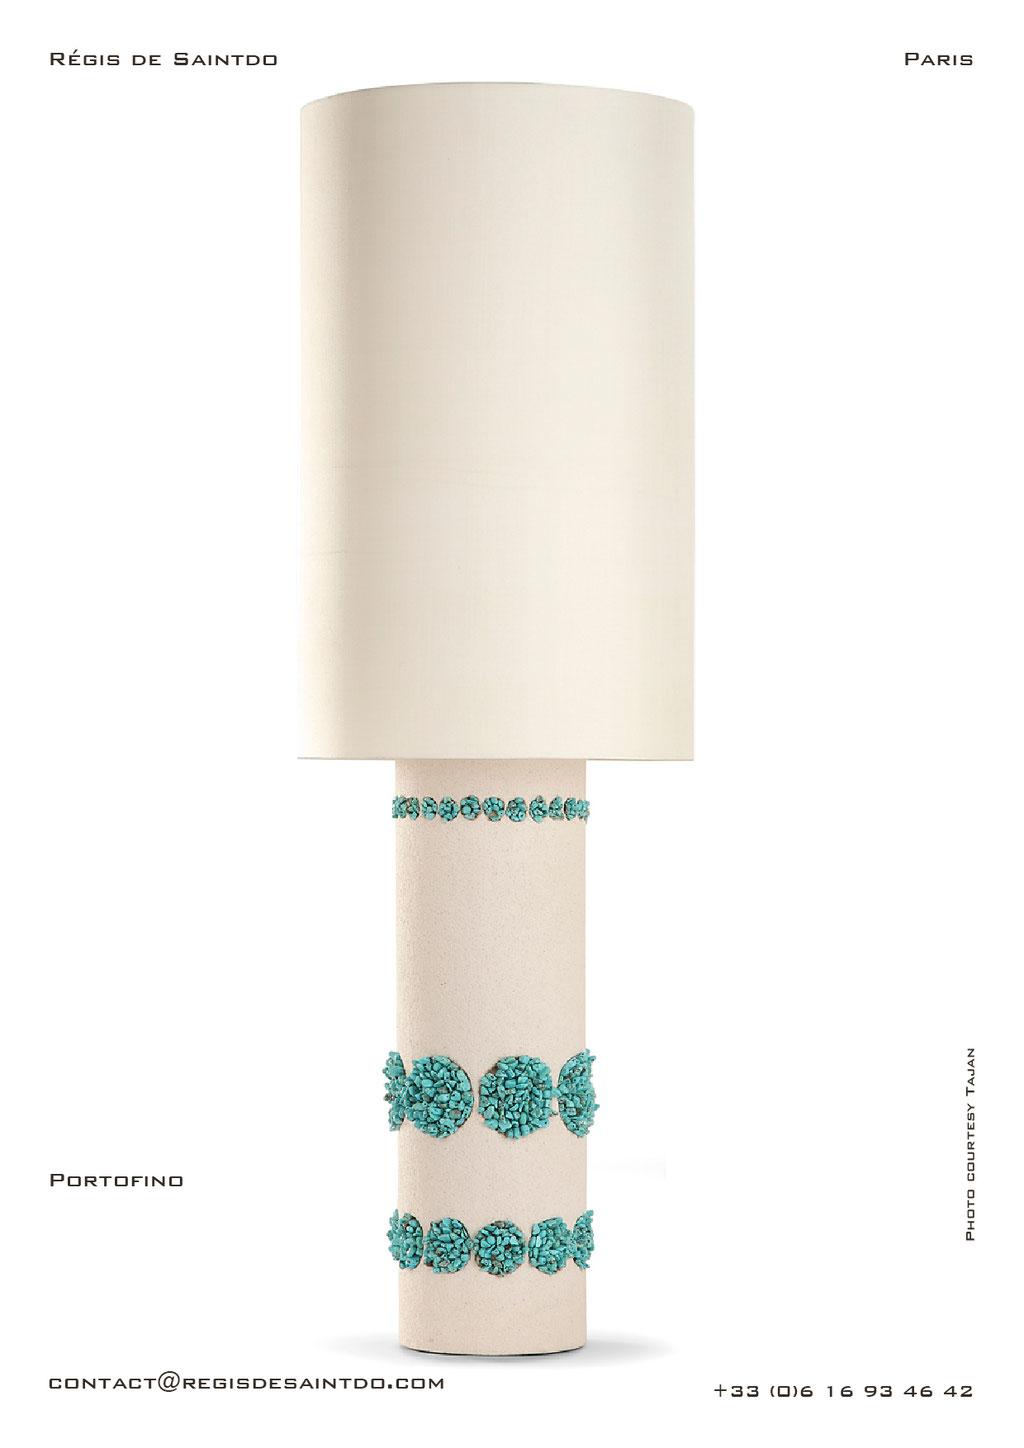 Lampe Portofino céramique blanche, howlites turquoise, faite main @Régis de Saintdo